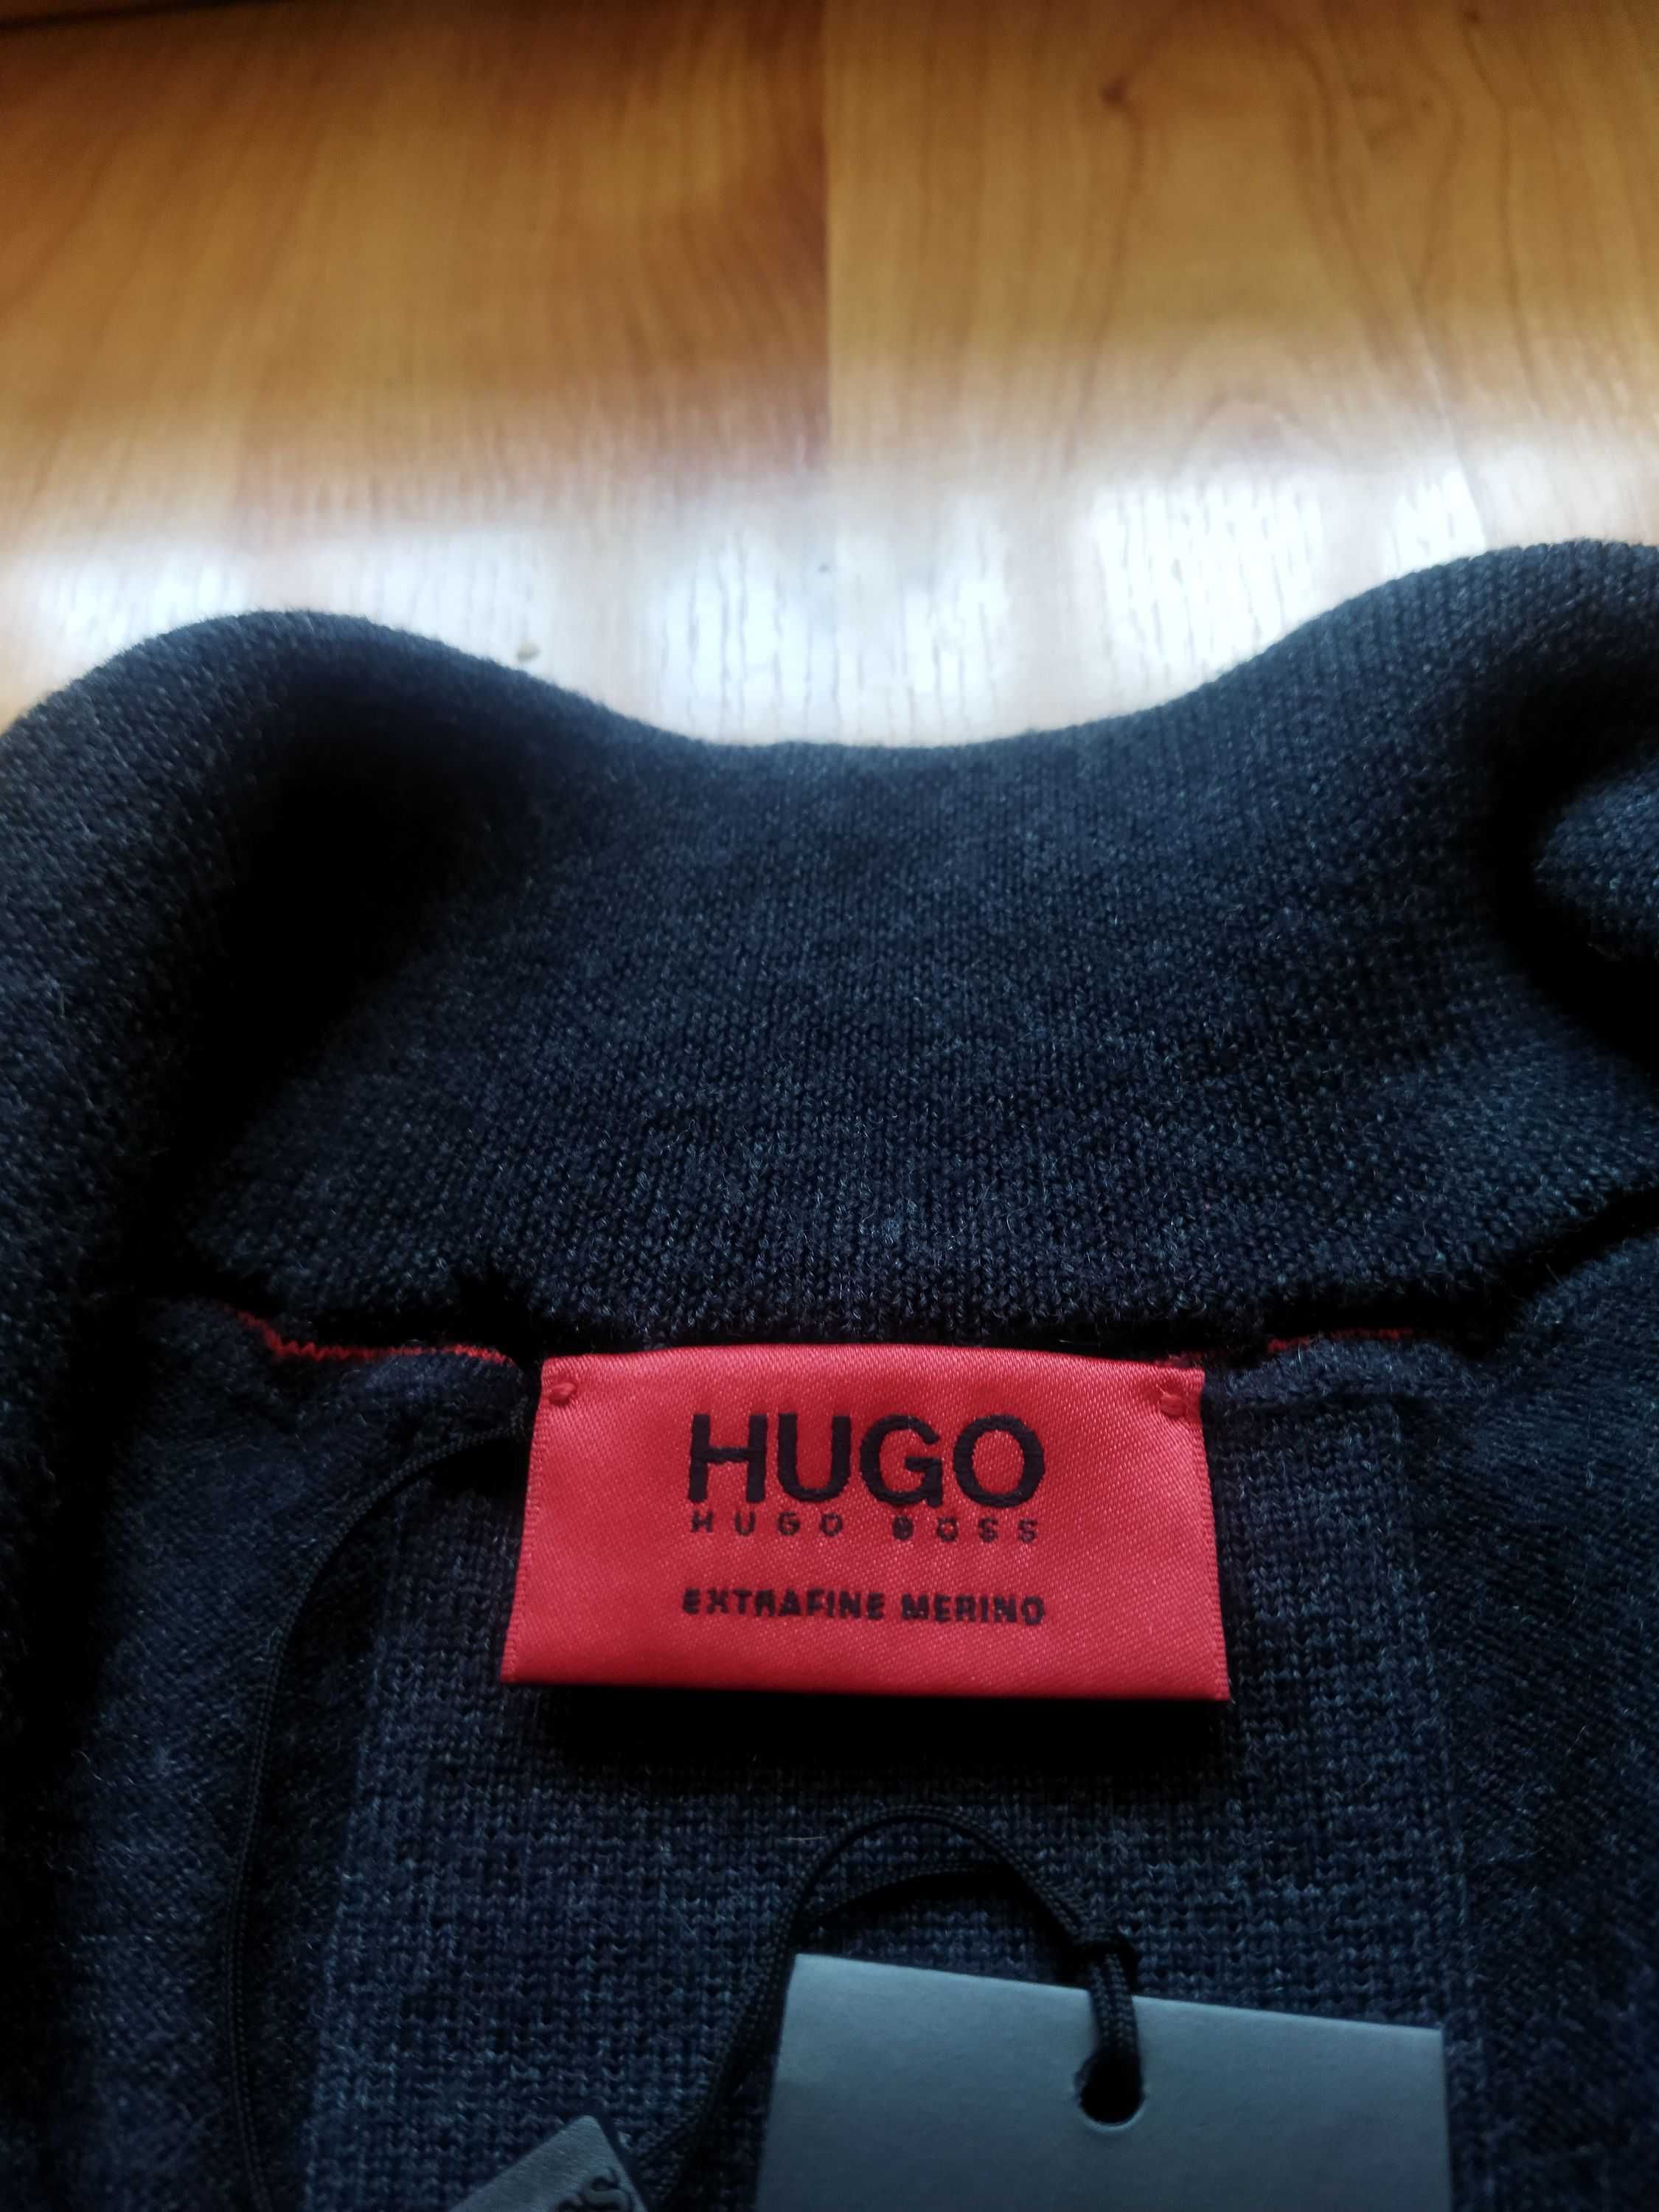 Свитер-полузамок Hugo Boss (Германия),шерсть,оригинал,новый,р-р 48